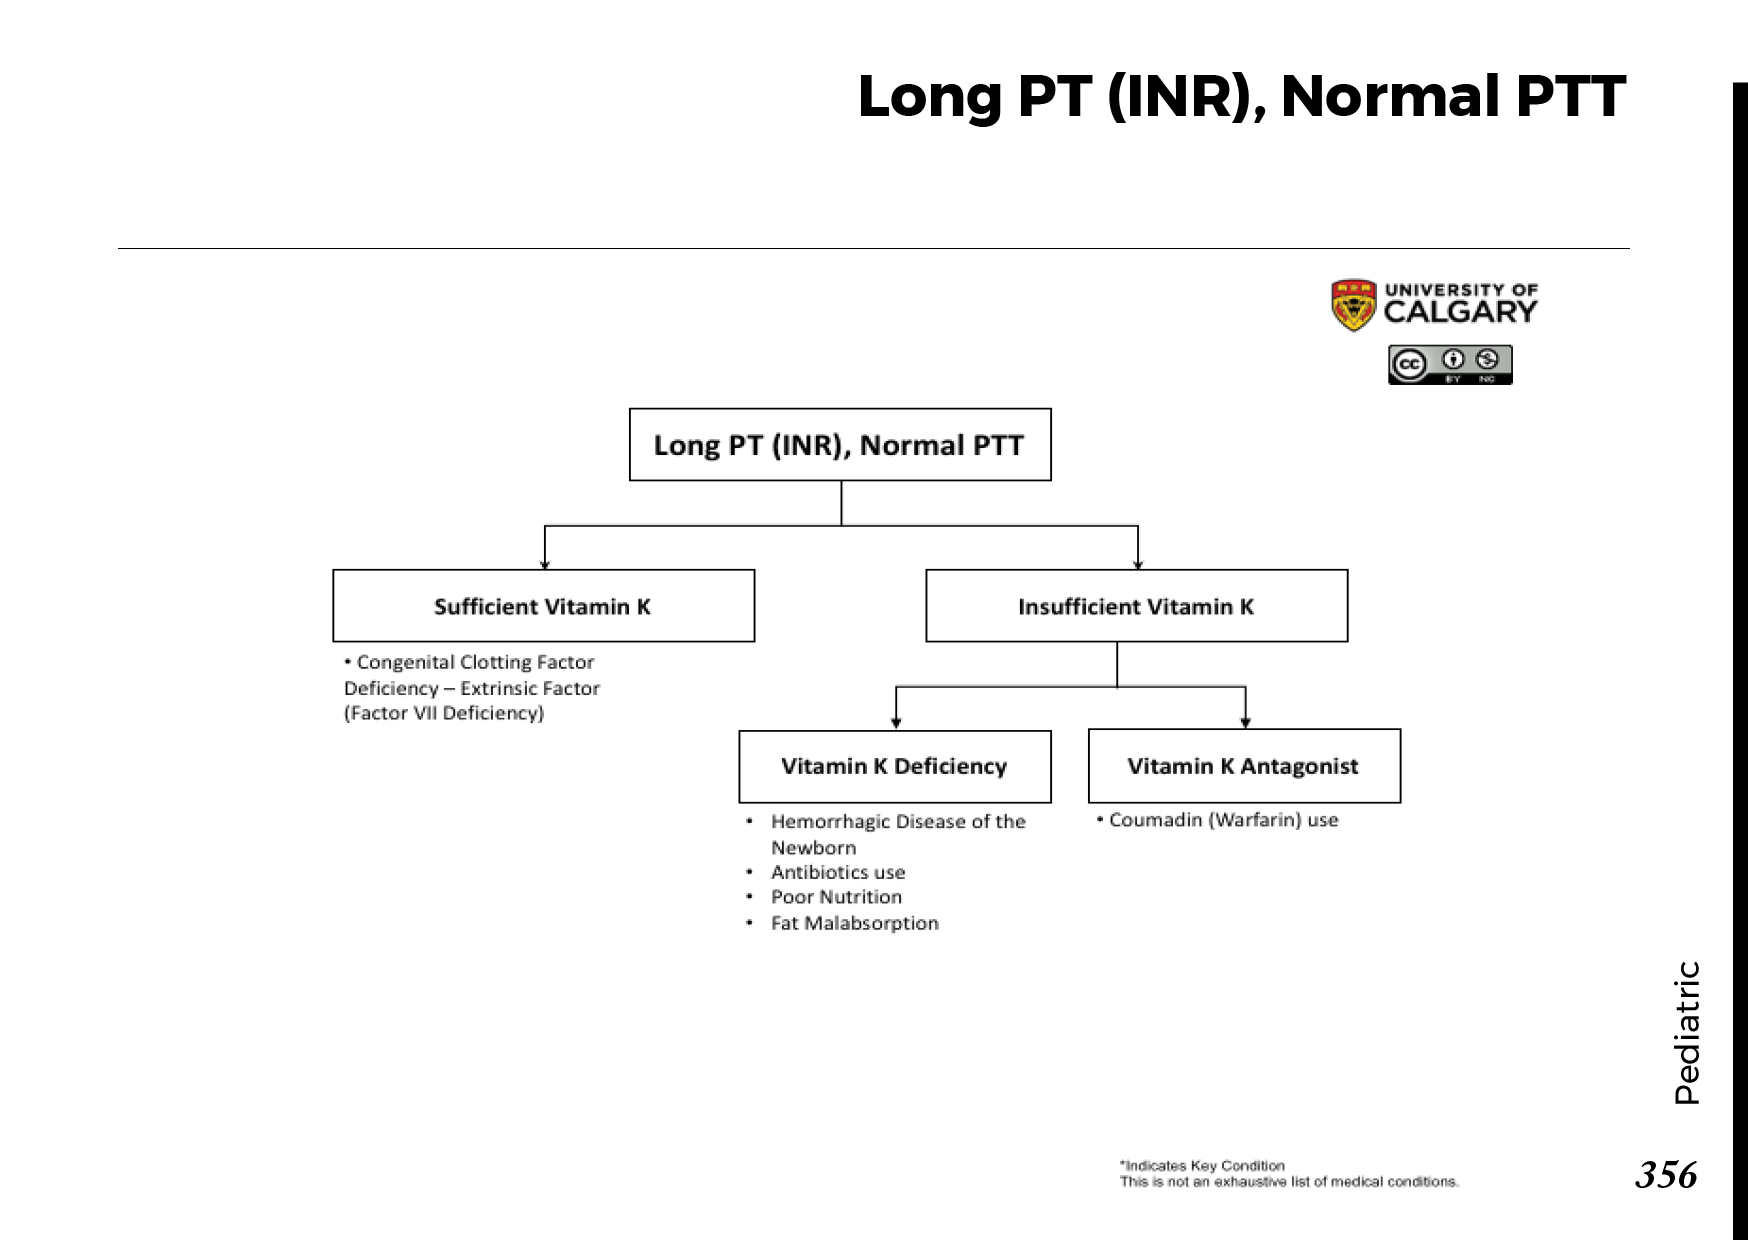 LONG PT (INR), NORMAL PTT Scheme